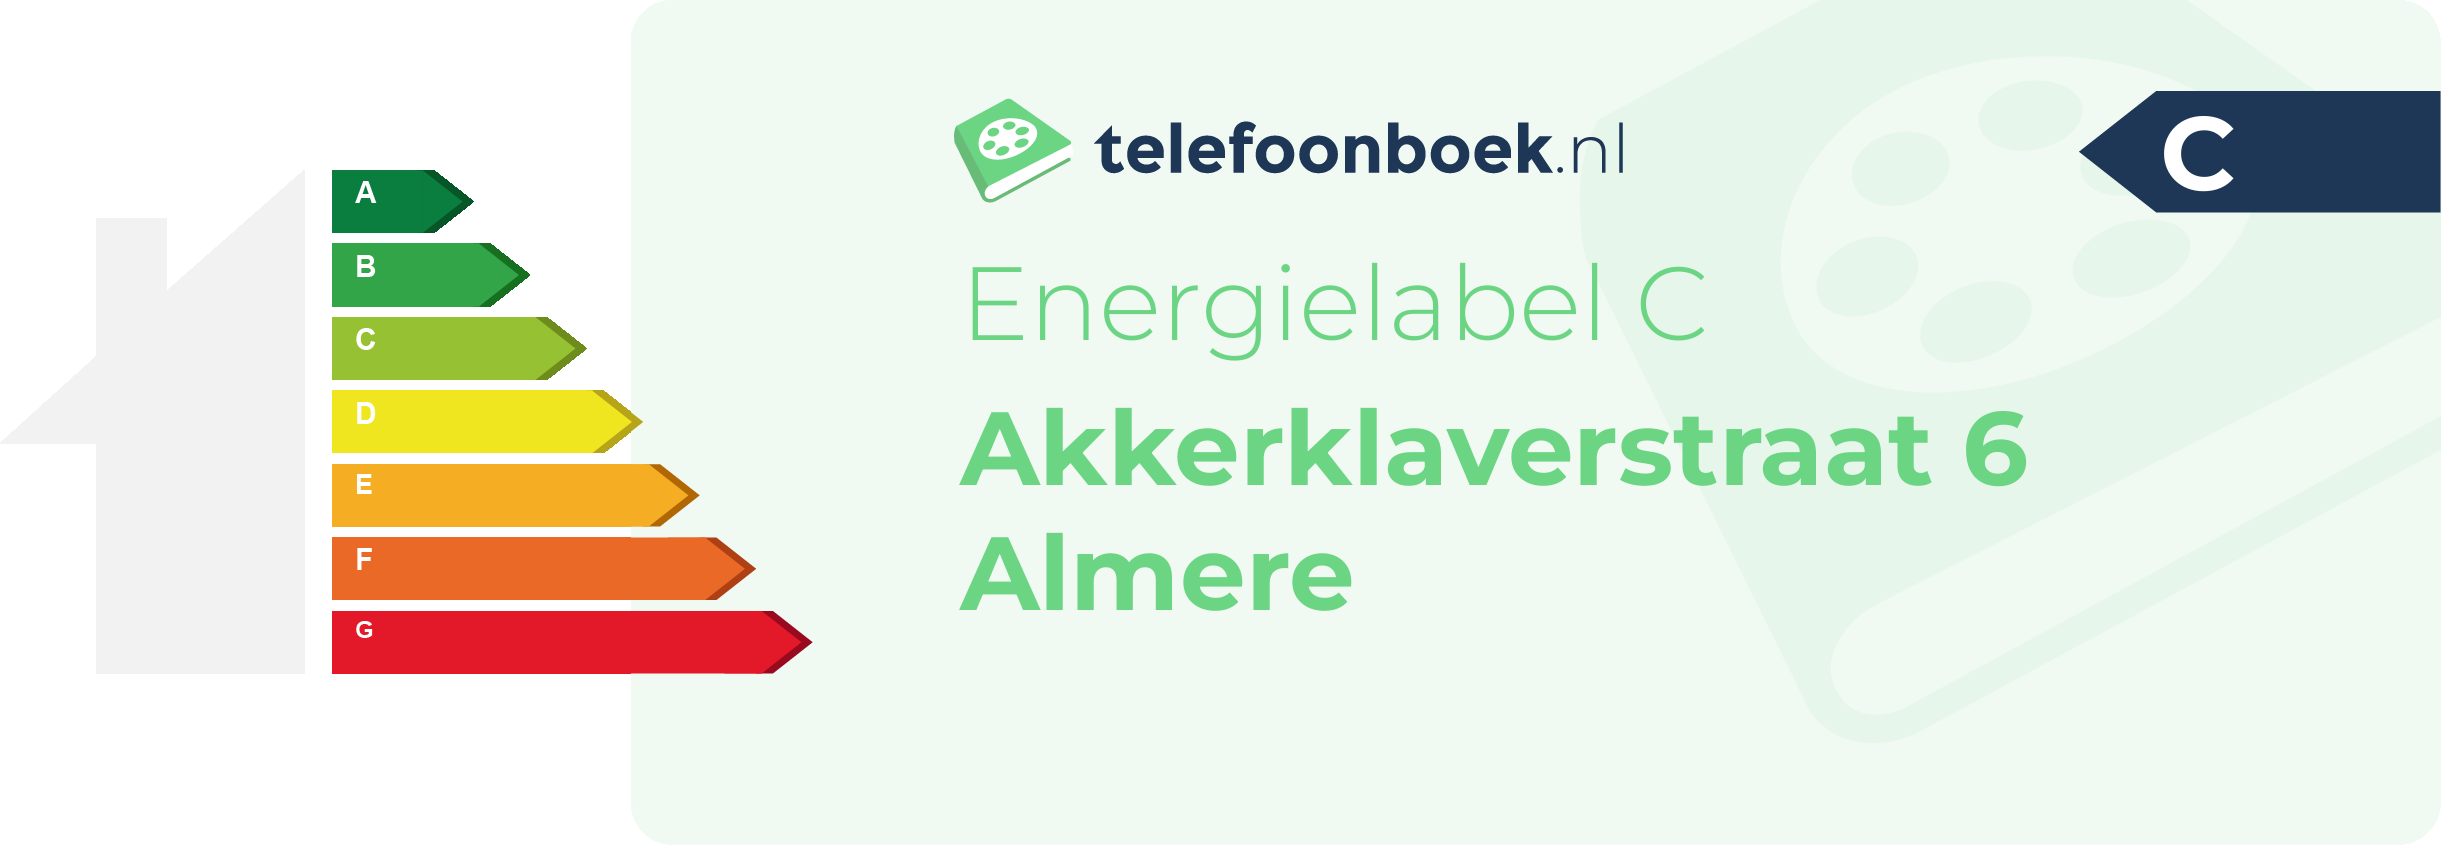 Energielabel Akkerklaverstraat 6 Almere